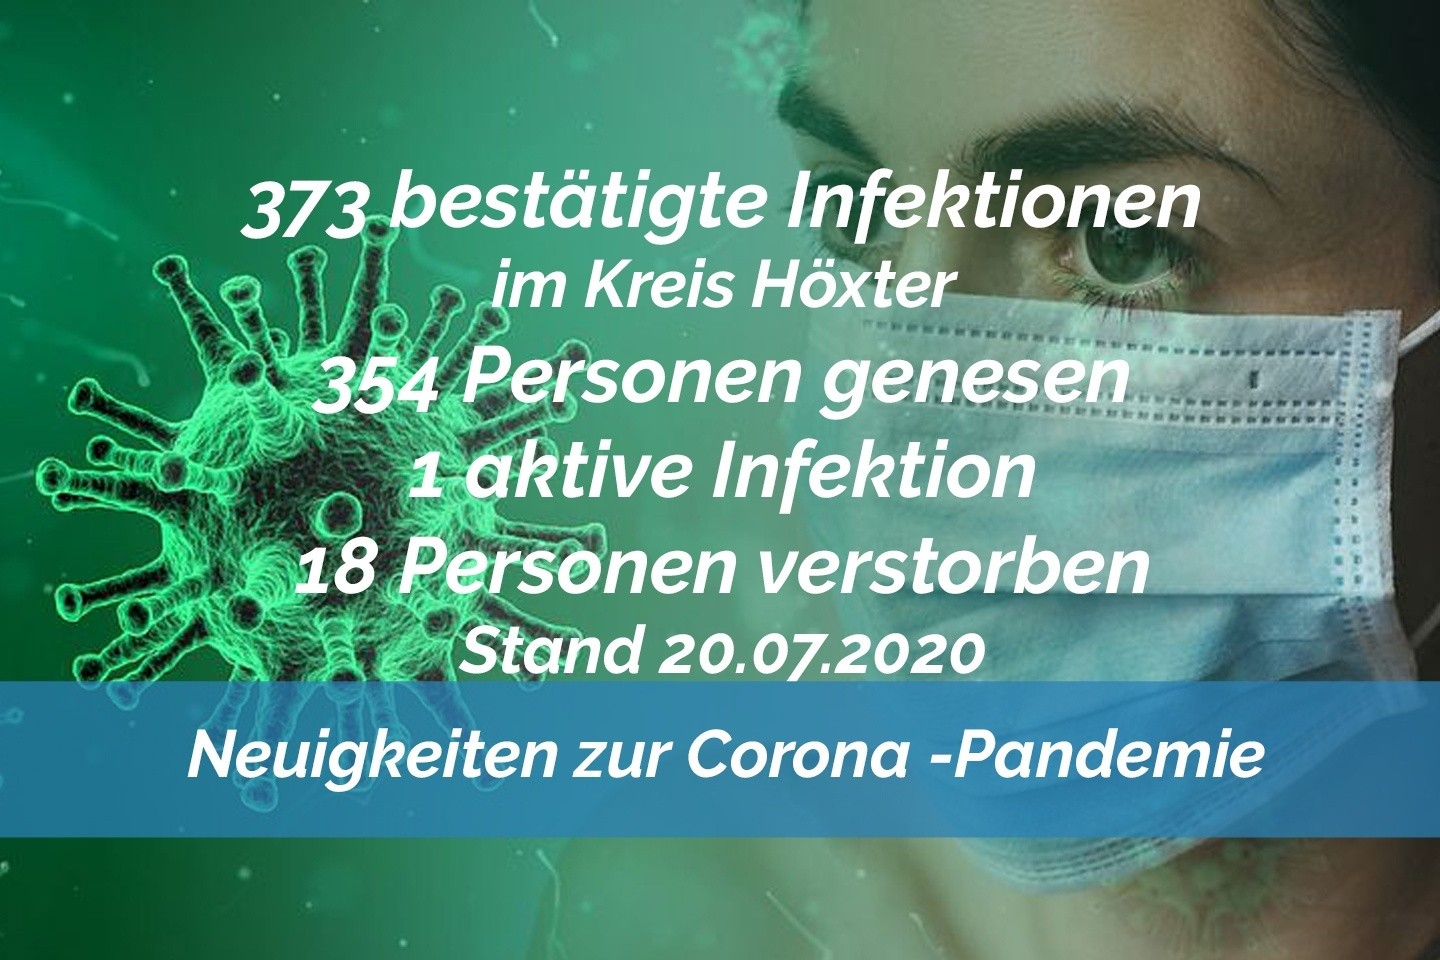 Update vom 20. Juli: 373 bestätigte Infektionen mit dem neuen Coronavirus im Kreis Höxter. Inzidenz sinkt wieder auf 0,00